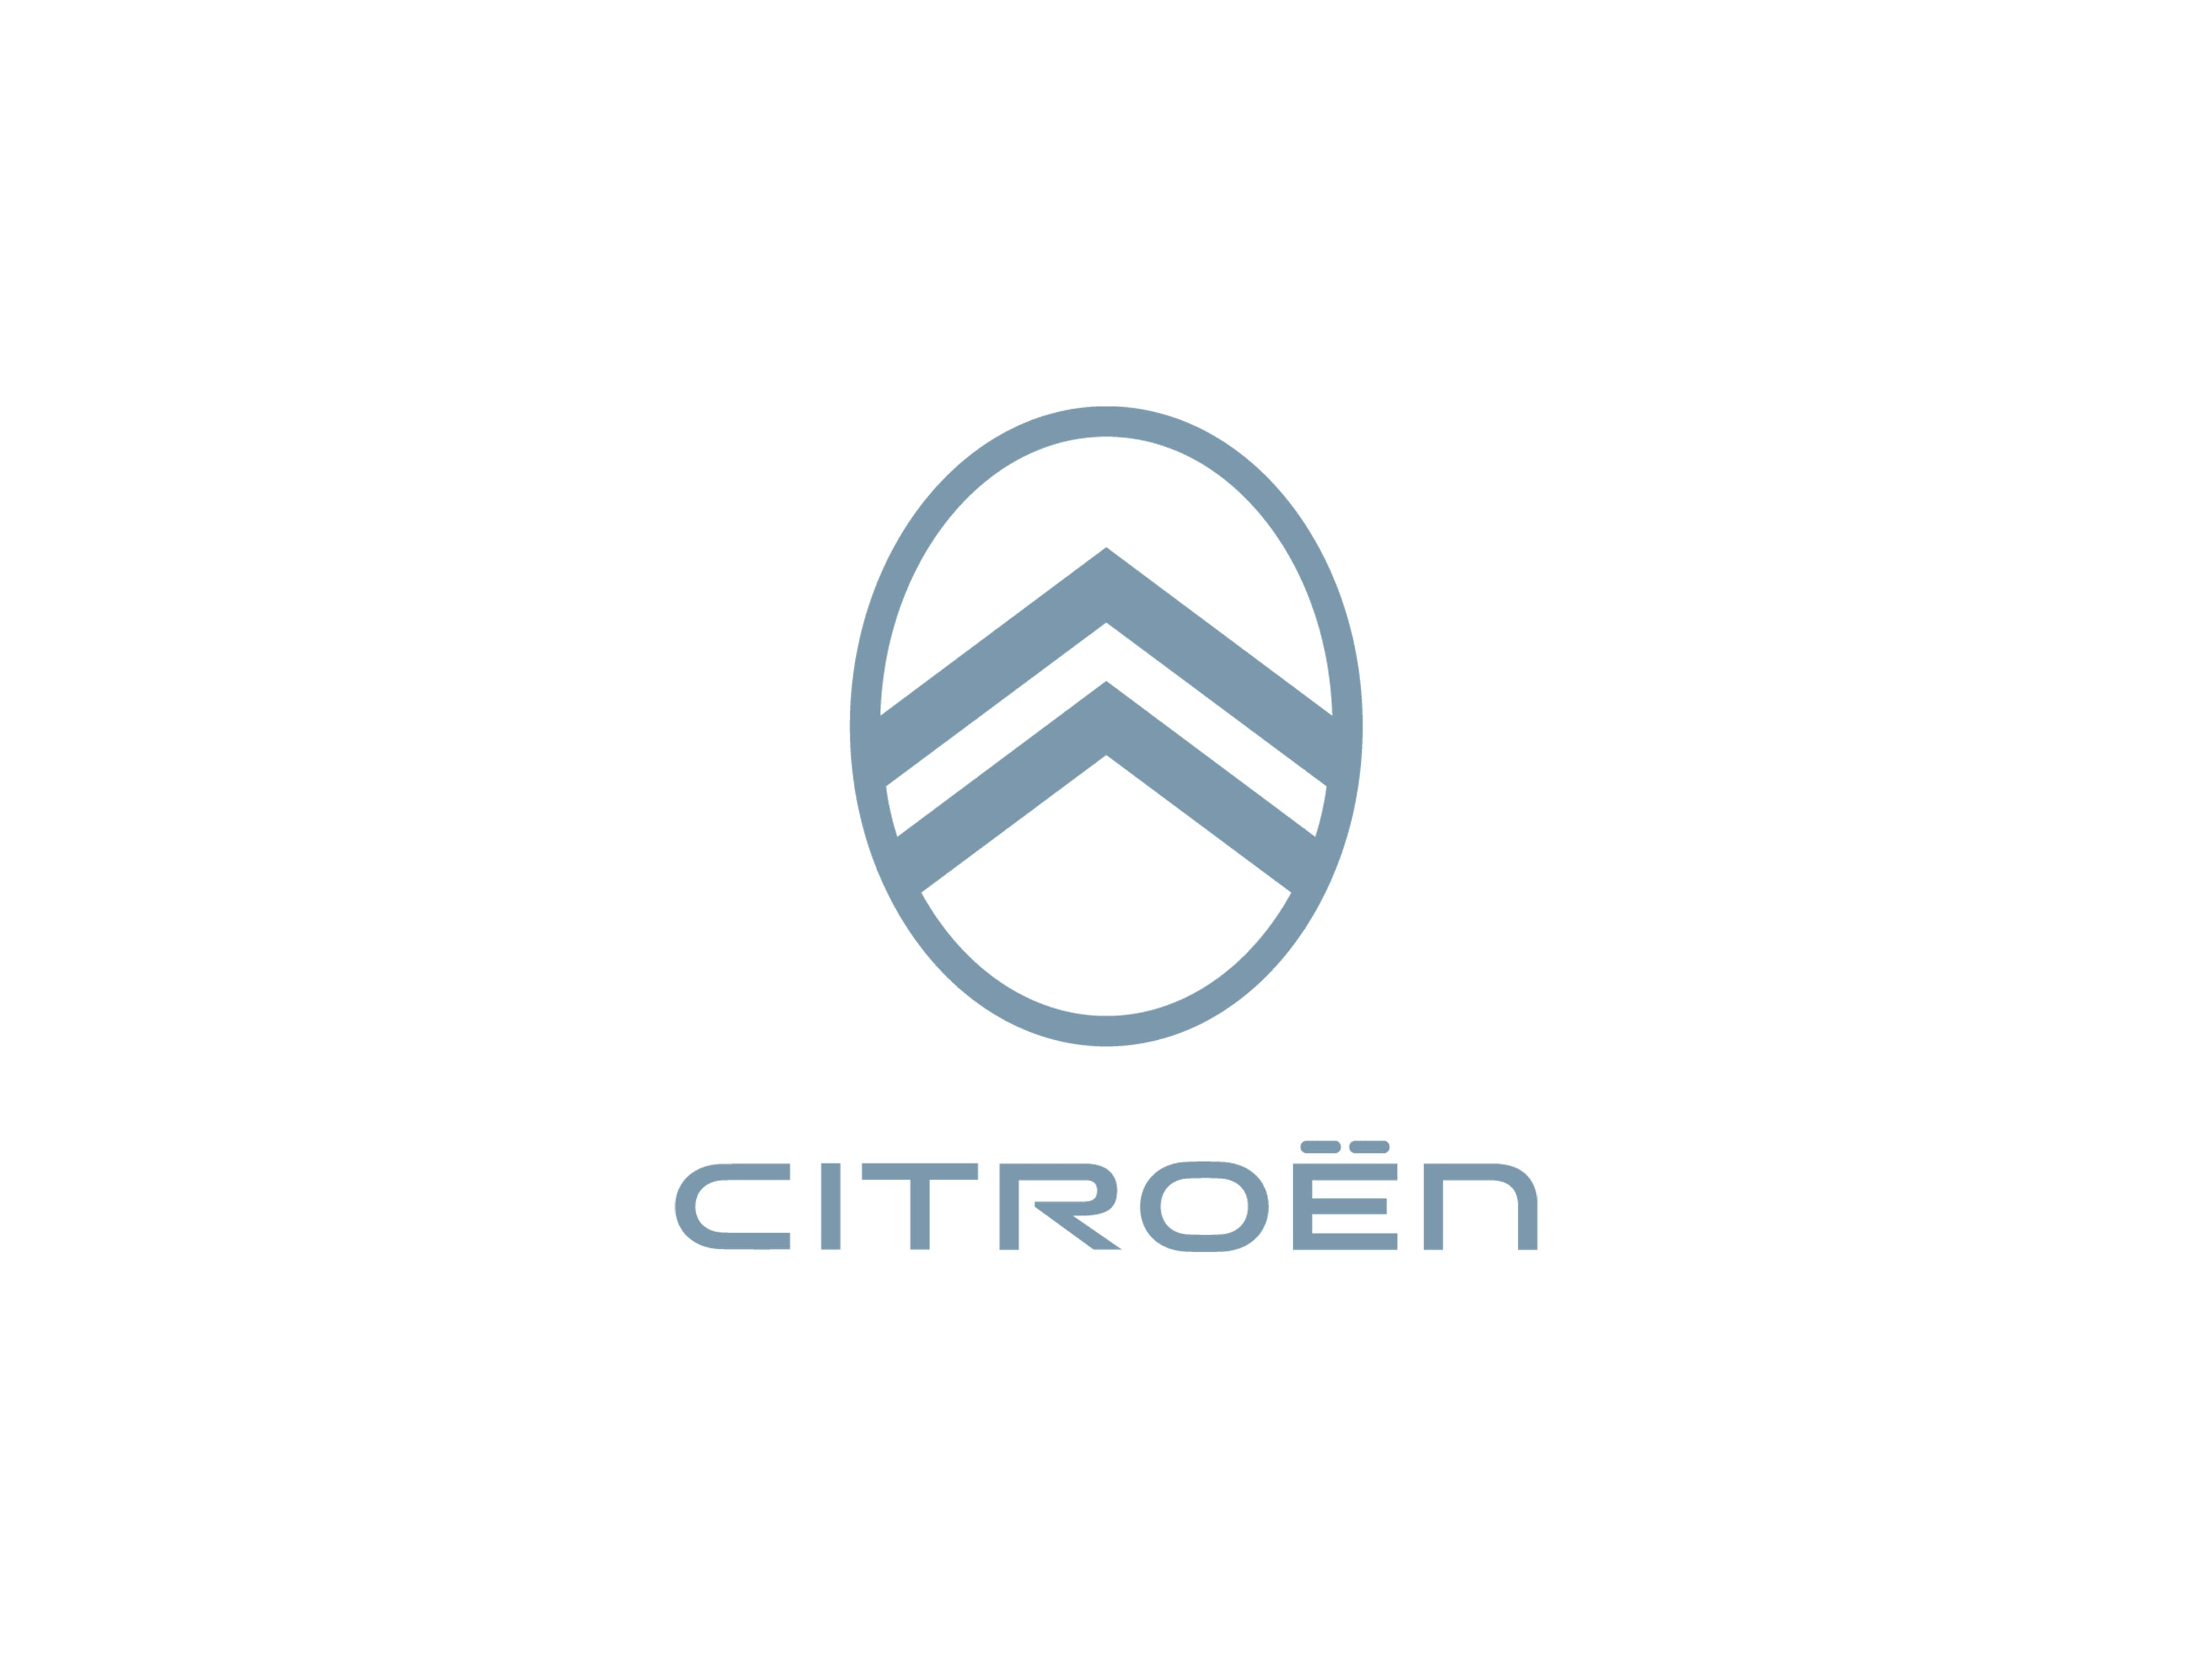 Novo identidade visual da Citroën com logotipo com moldura oval, chevrons mais largos e tom de azul. 